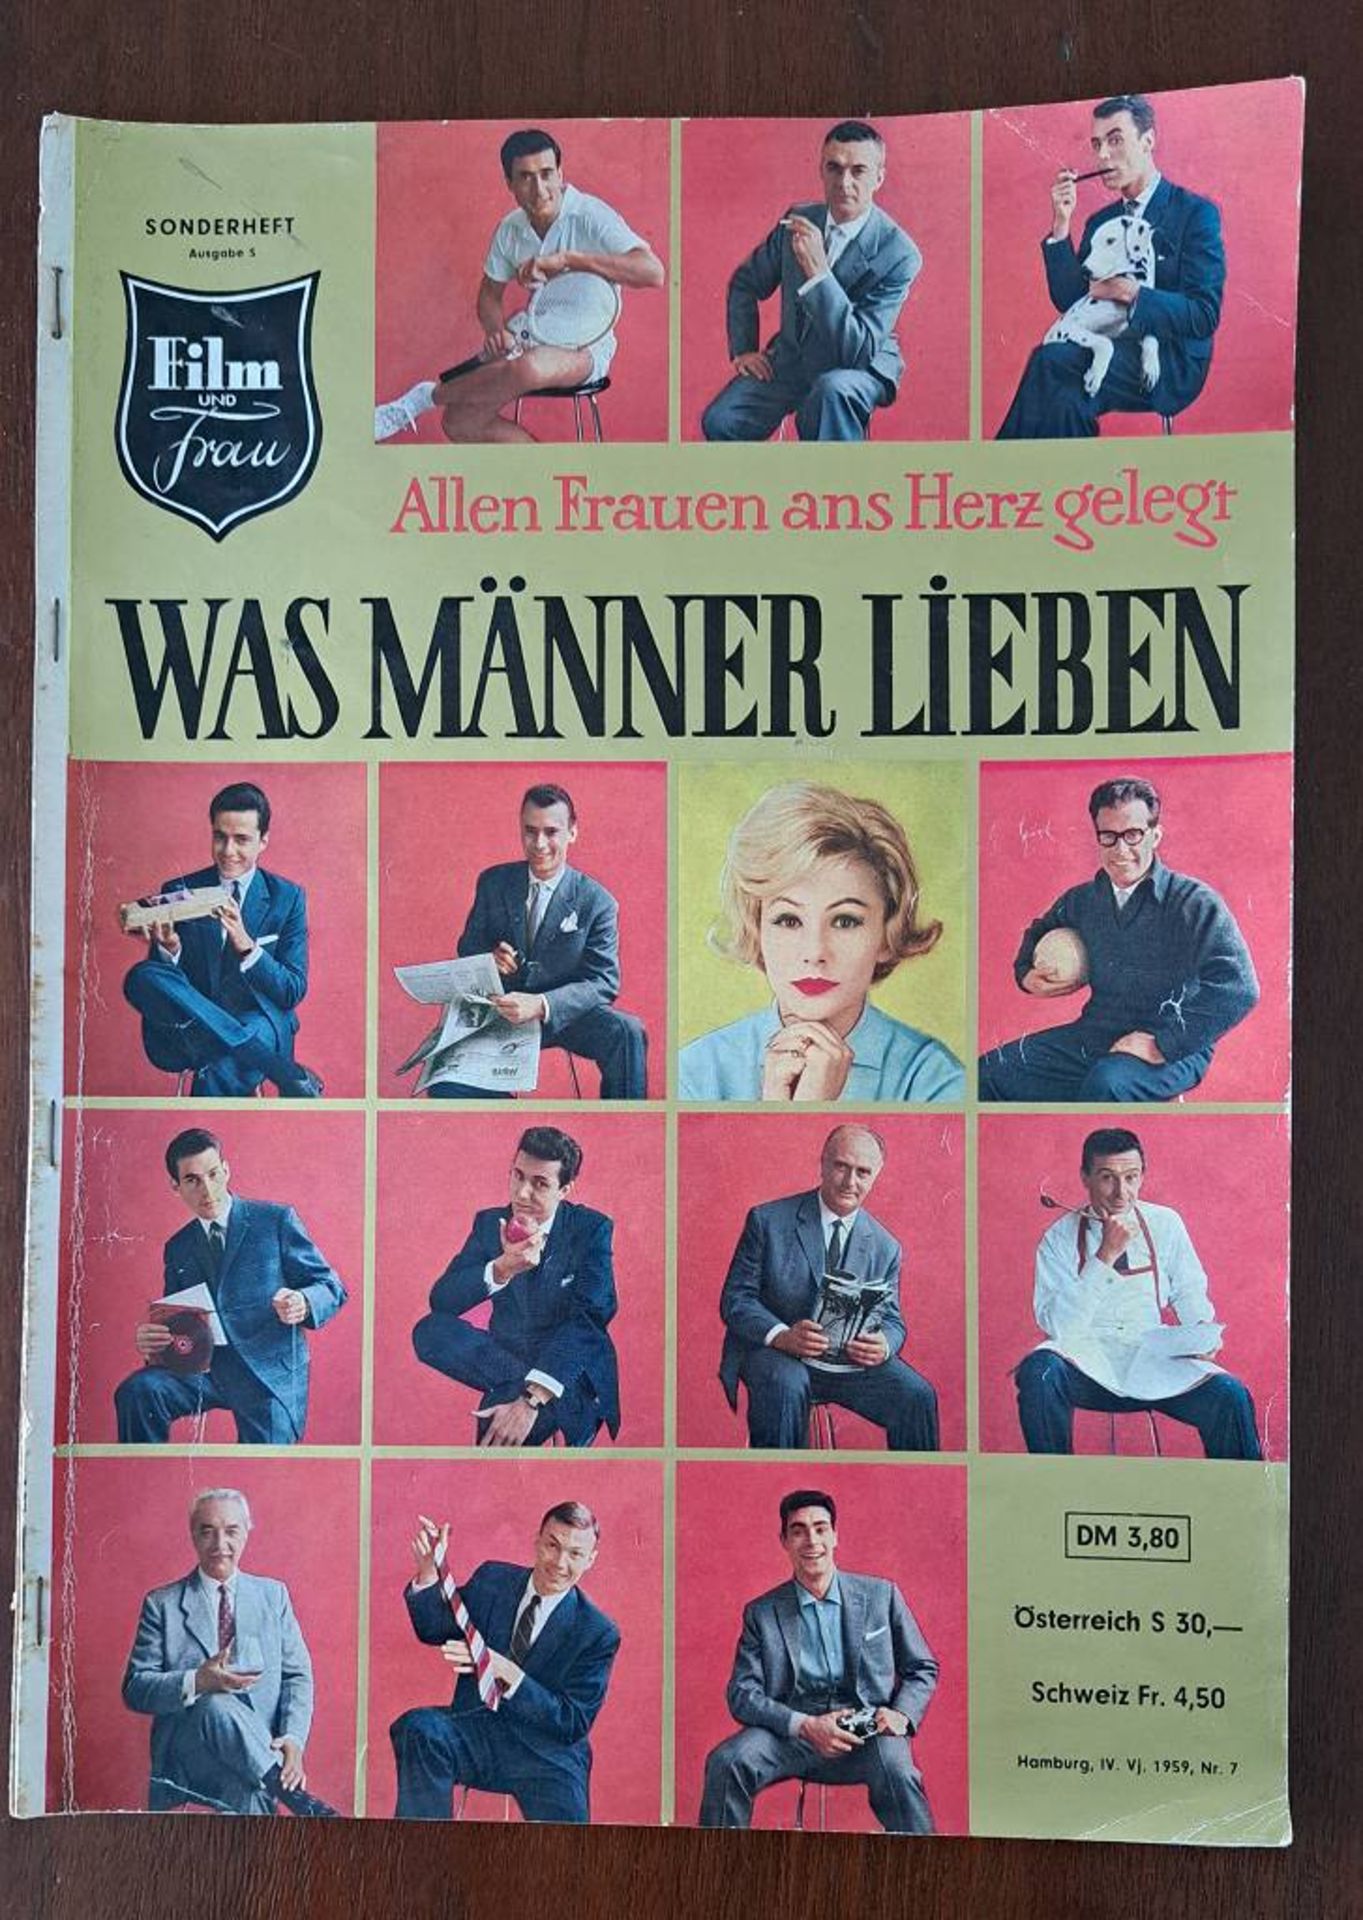 "Film und Frau" 1959 "Was Männer lieben"